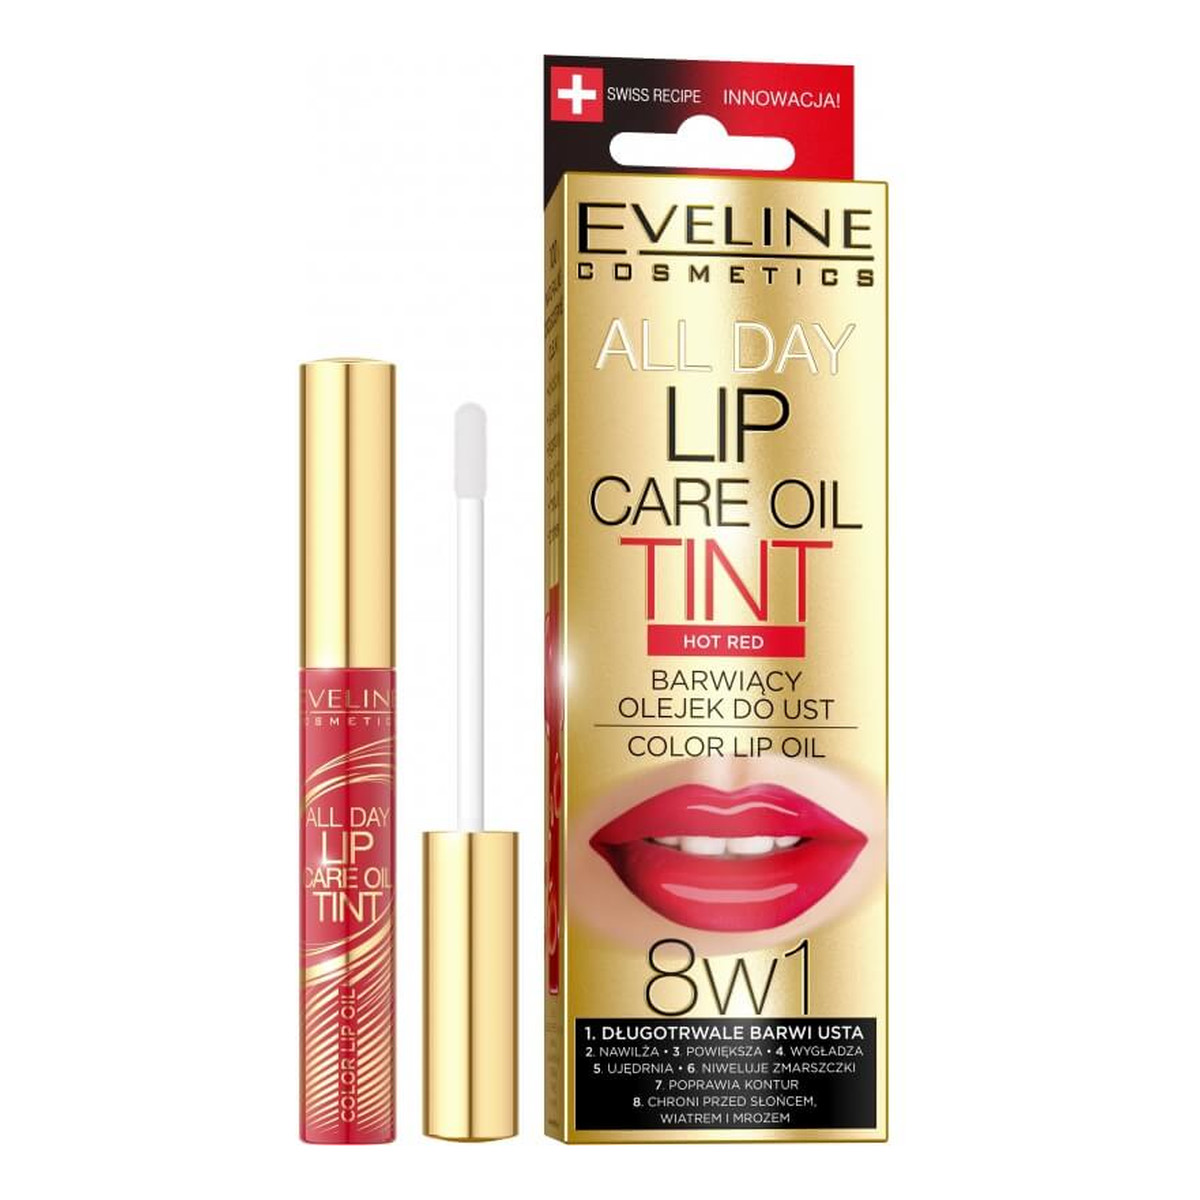 Eveline All Day Lip Care Oil Tint Barwiący Olejek do ust 8w1 7ml